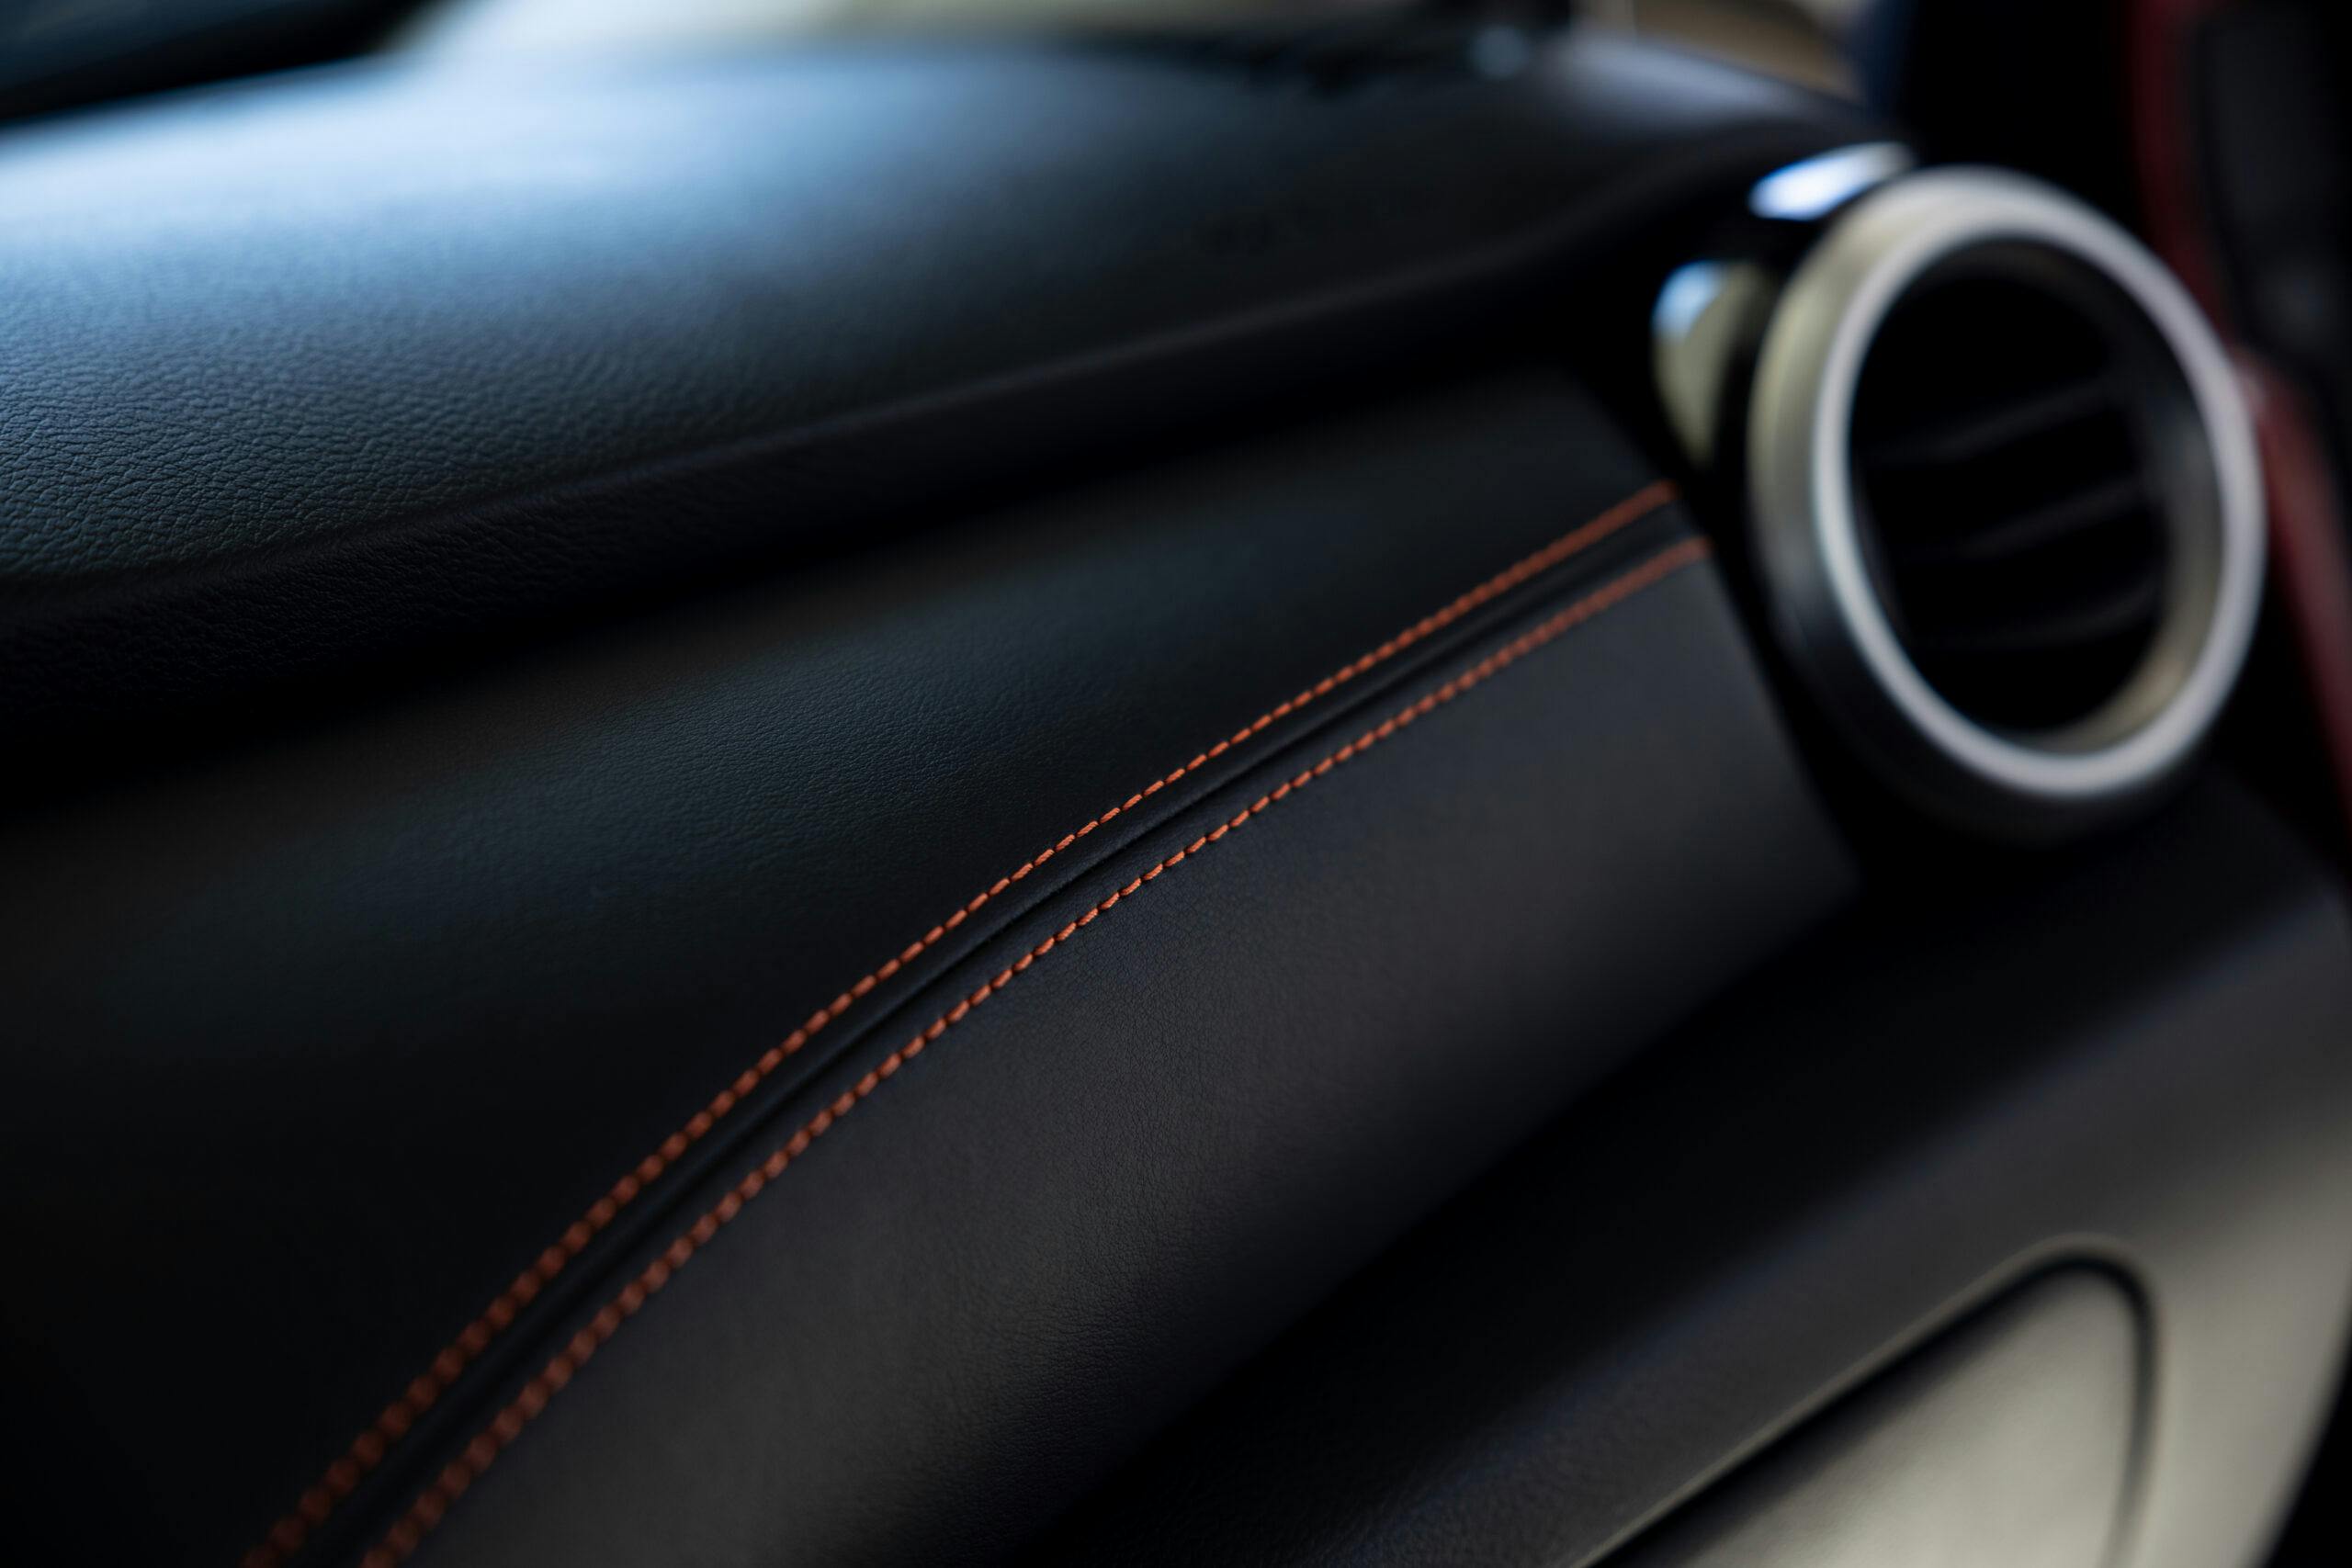 2023 Nissan Nissan Versa interior dash stitching detail